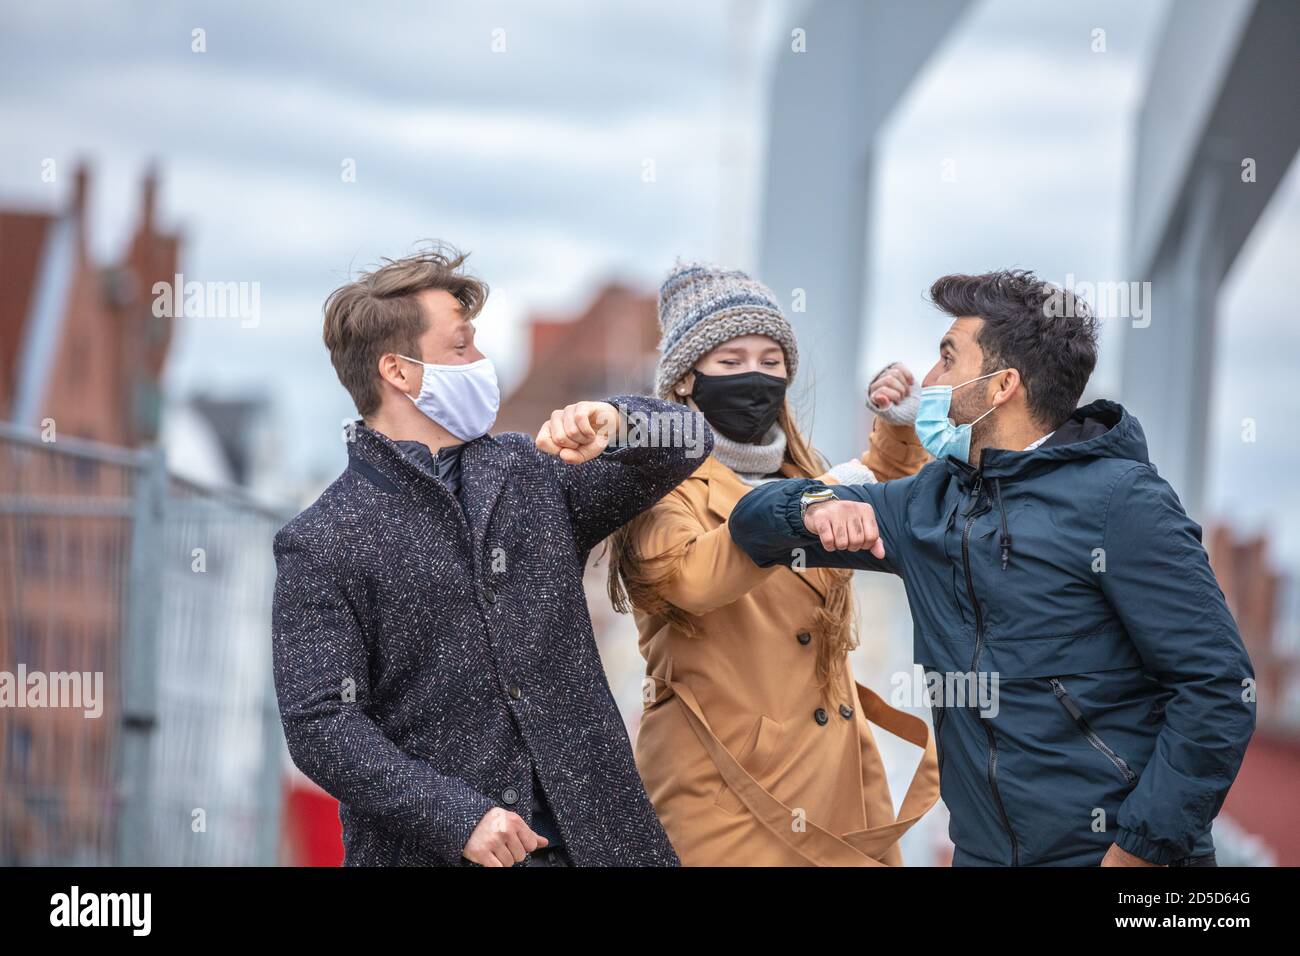 Zwei Männer und eine Frau grüßen sich mit dem Ellenbogen. Corona-Zeit mit alltäglichen Masken in der kalten Jahreszeit in der Stadt. Stockfoto